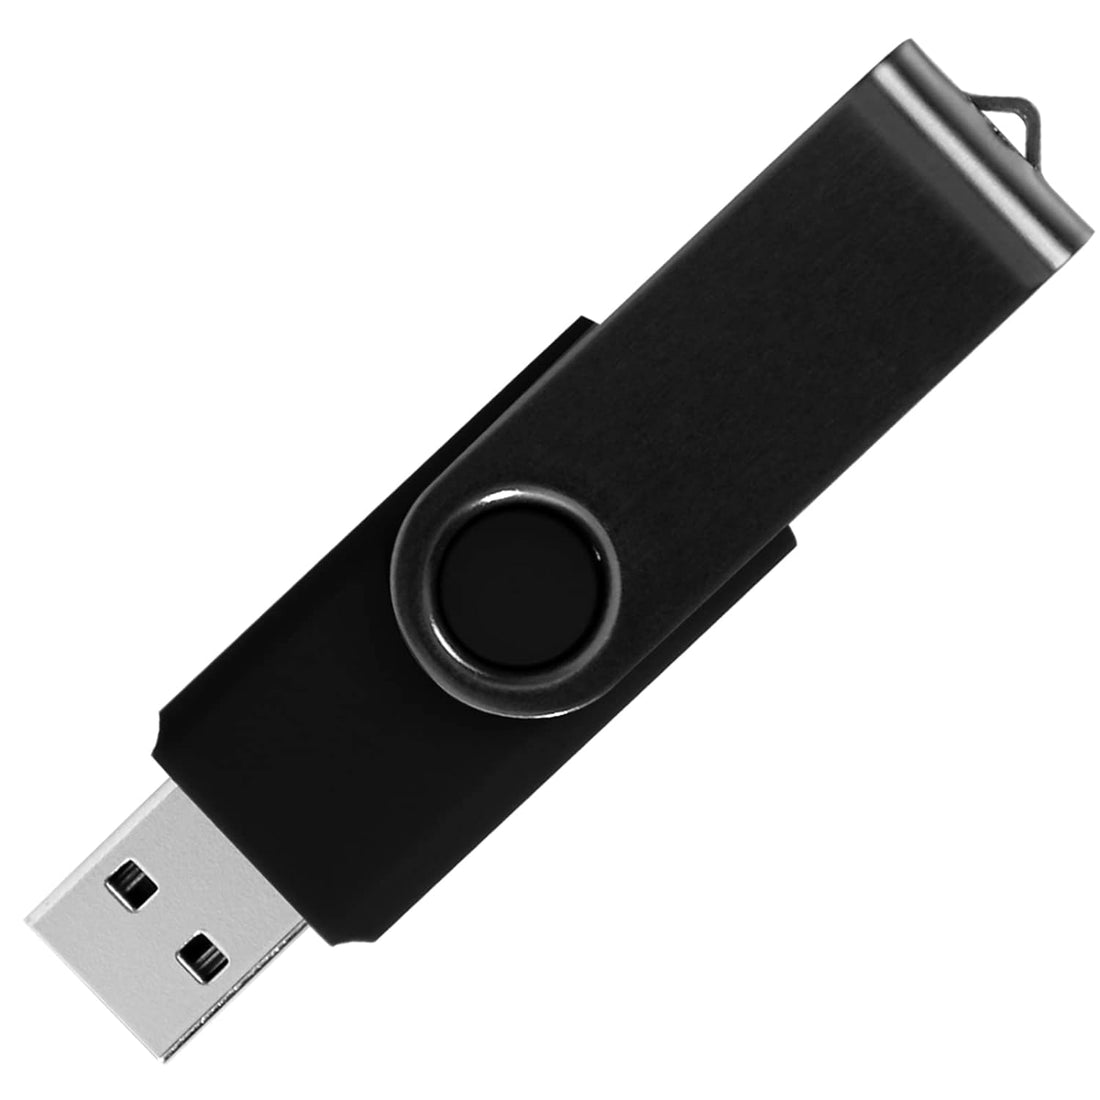 KAISLE 64GB USB Flash Drives 2 Pack USB 2.0 Thumb Drive Pen Drive Swivel Memory Sticks (2 Colors: Black Blue)